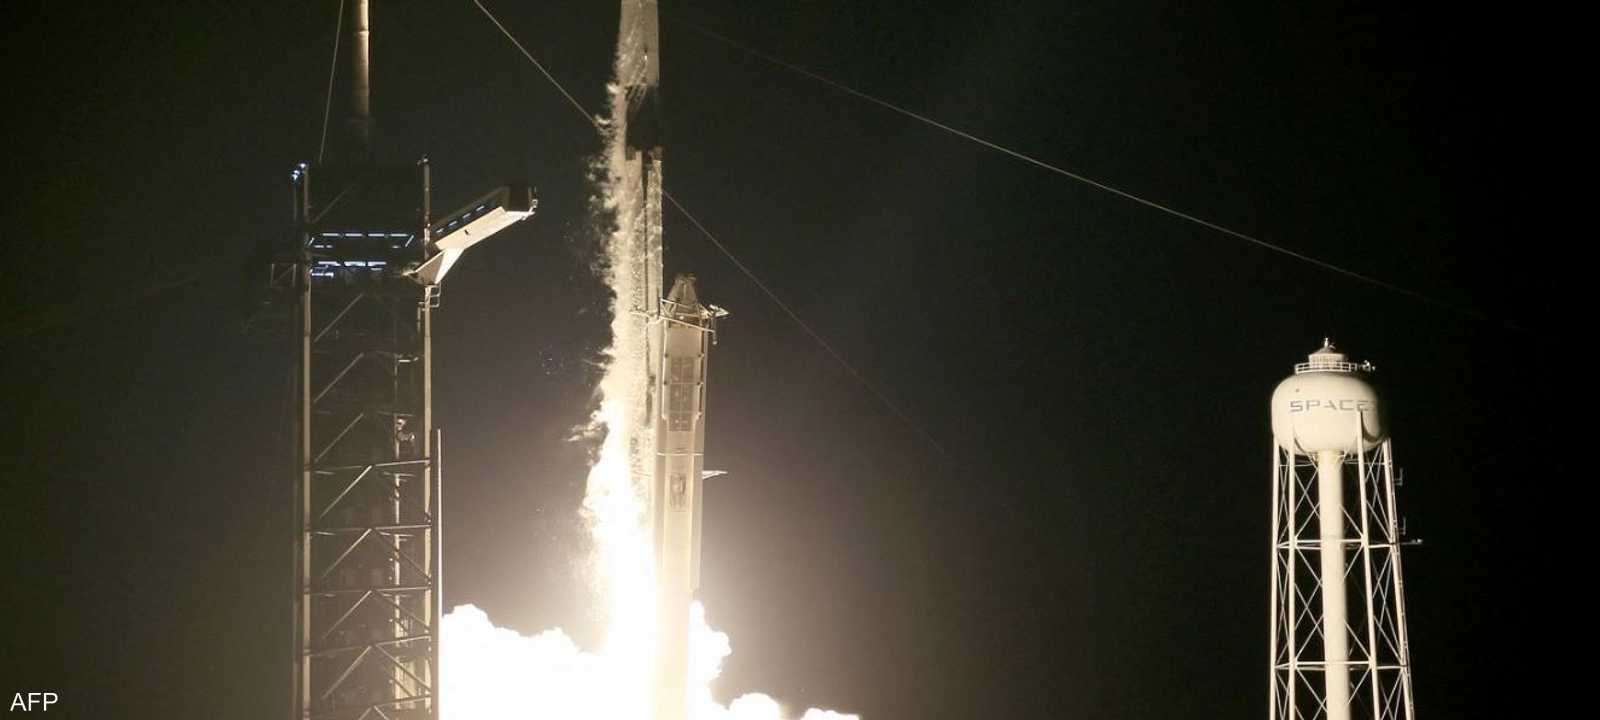 إطلاق صاروخ لشركة "سبيس إكس" ضمن "رحلات الفضاء الخاصة"